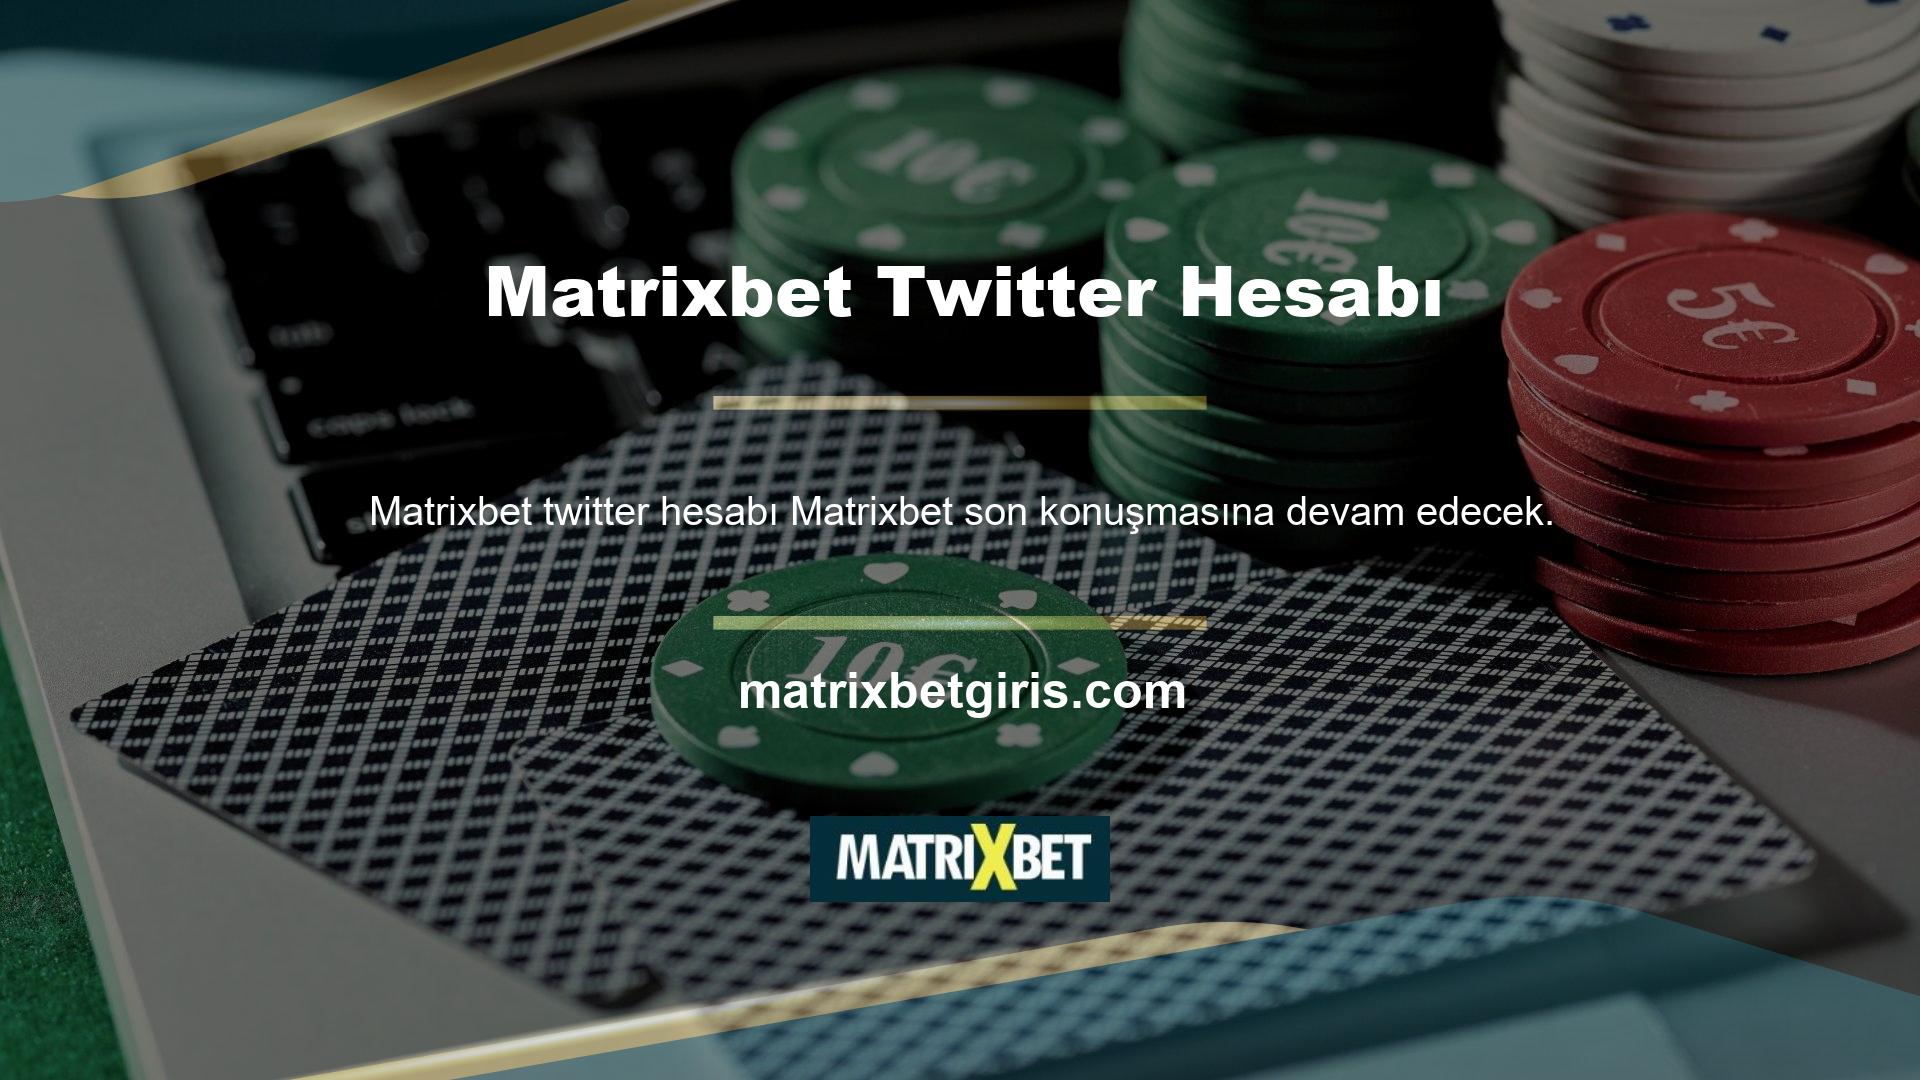 Matrixbet Twitter adresi değişmedi ancak o zamandan beri güncellendi ve üyeler konuyu araştırmaya ihtiyaç duymuyor